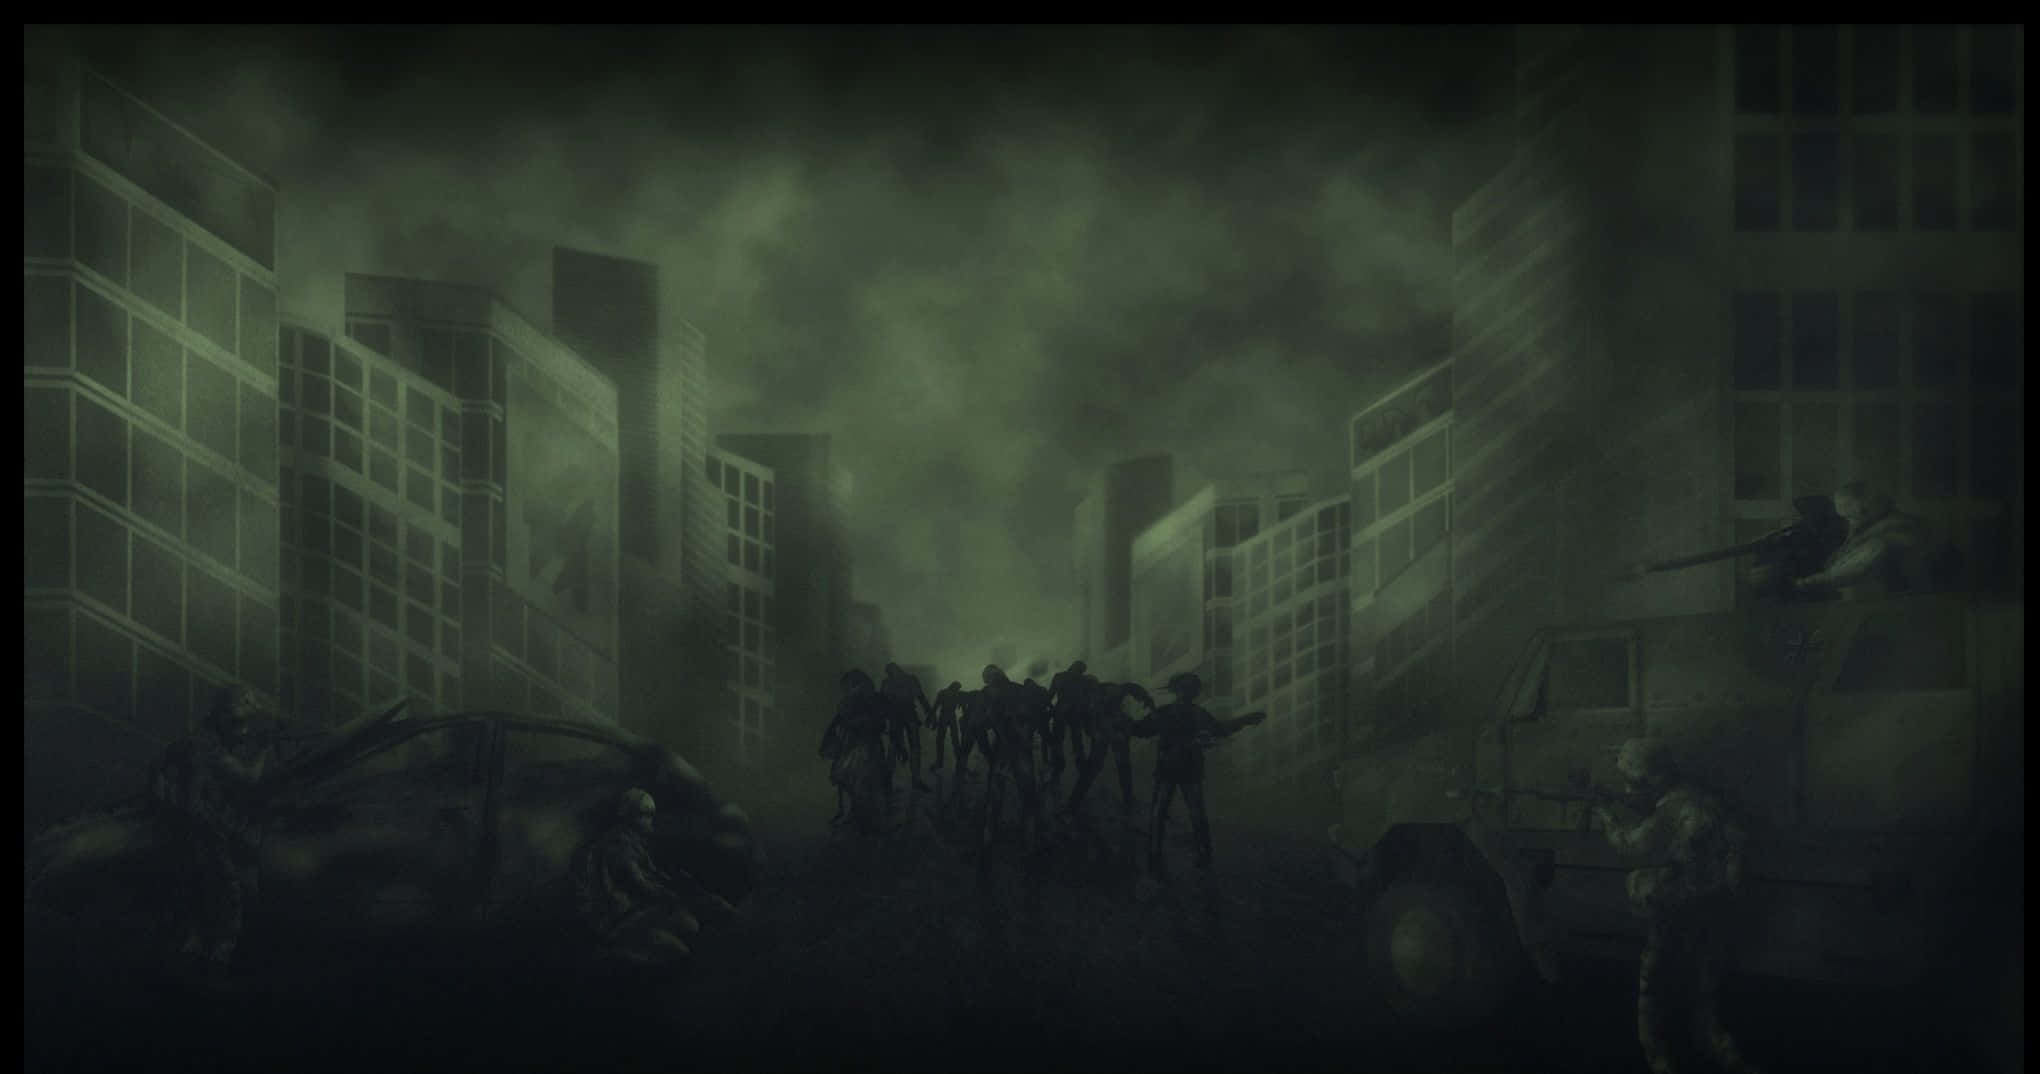 Zombiebaggrundsbillede